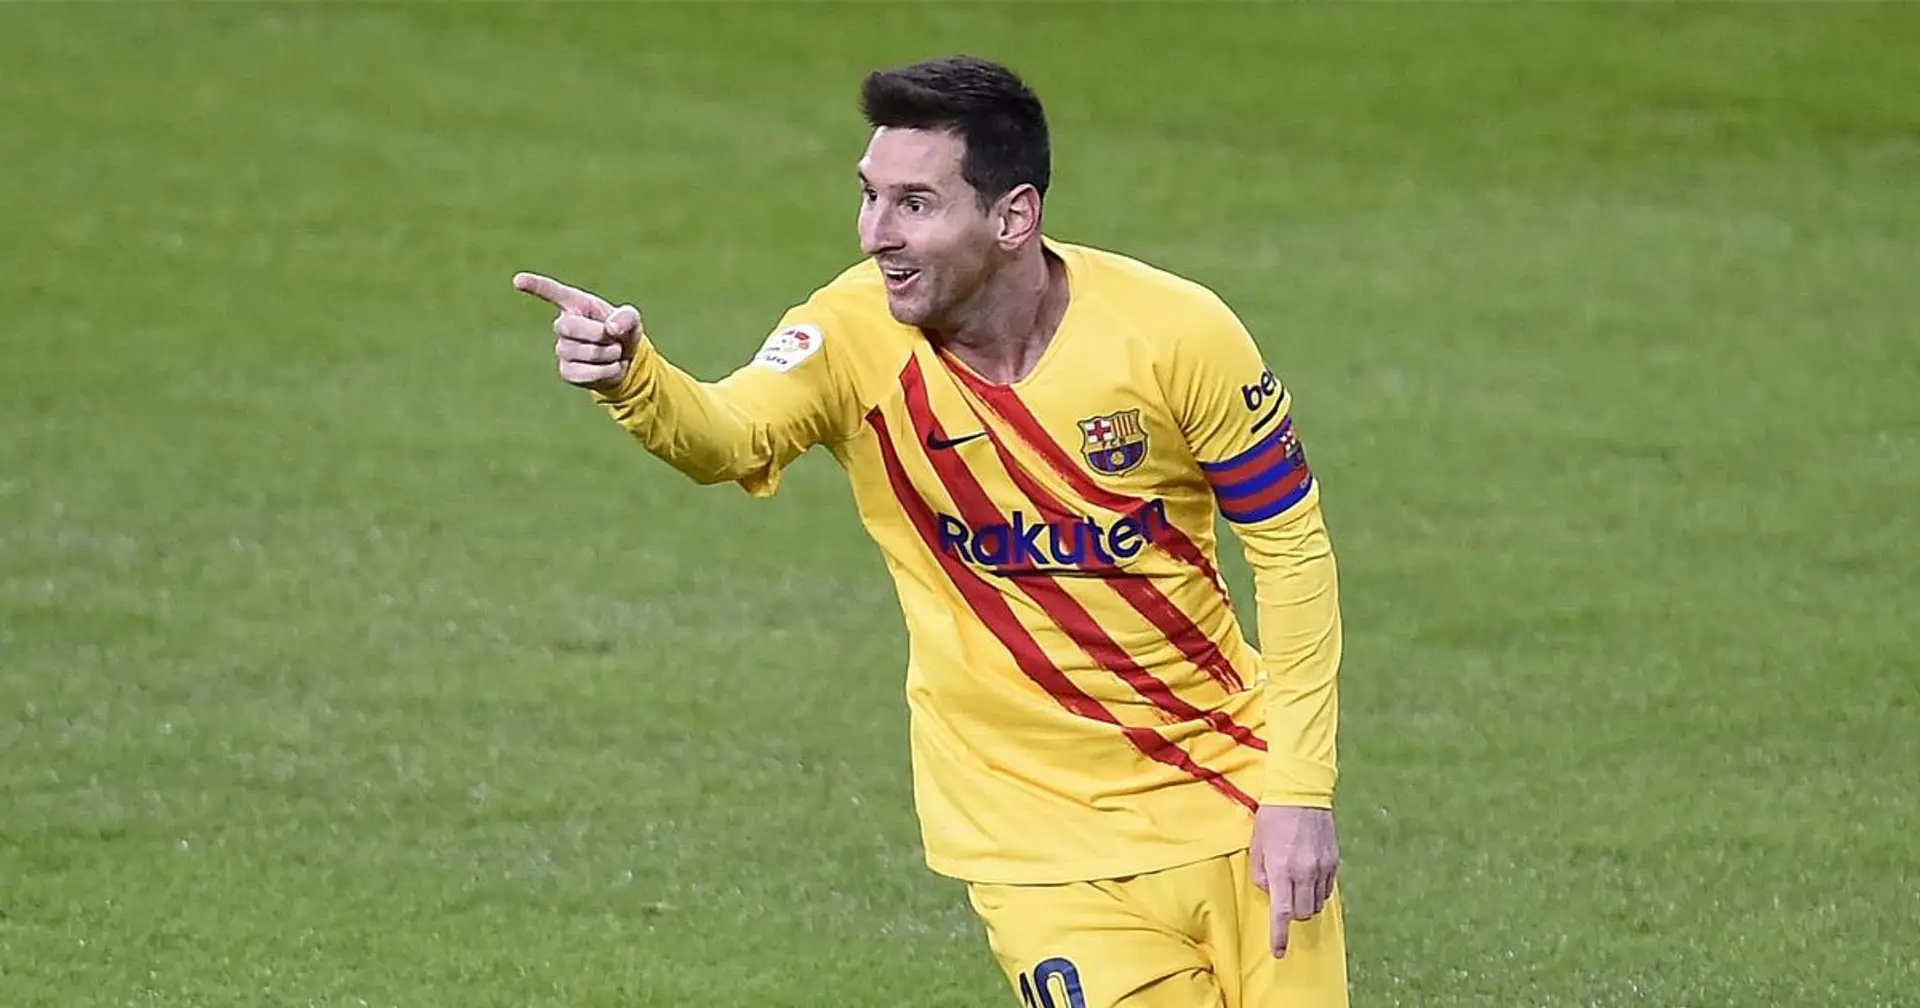 De retour à sa place: Messi en tête du classement des buteurs de la Liga après son doublé face à l'Athletic Bilbao